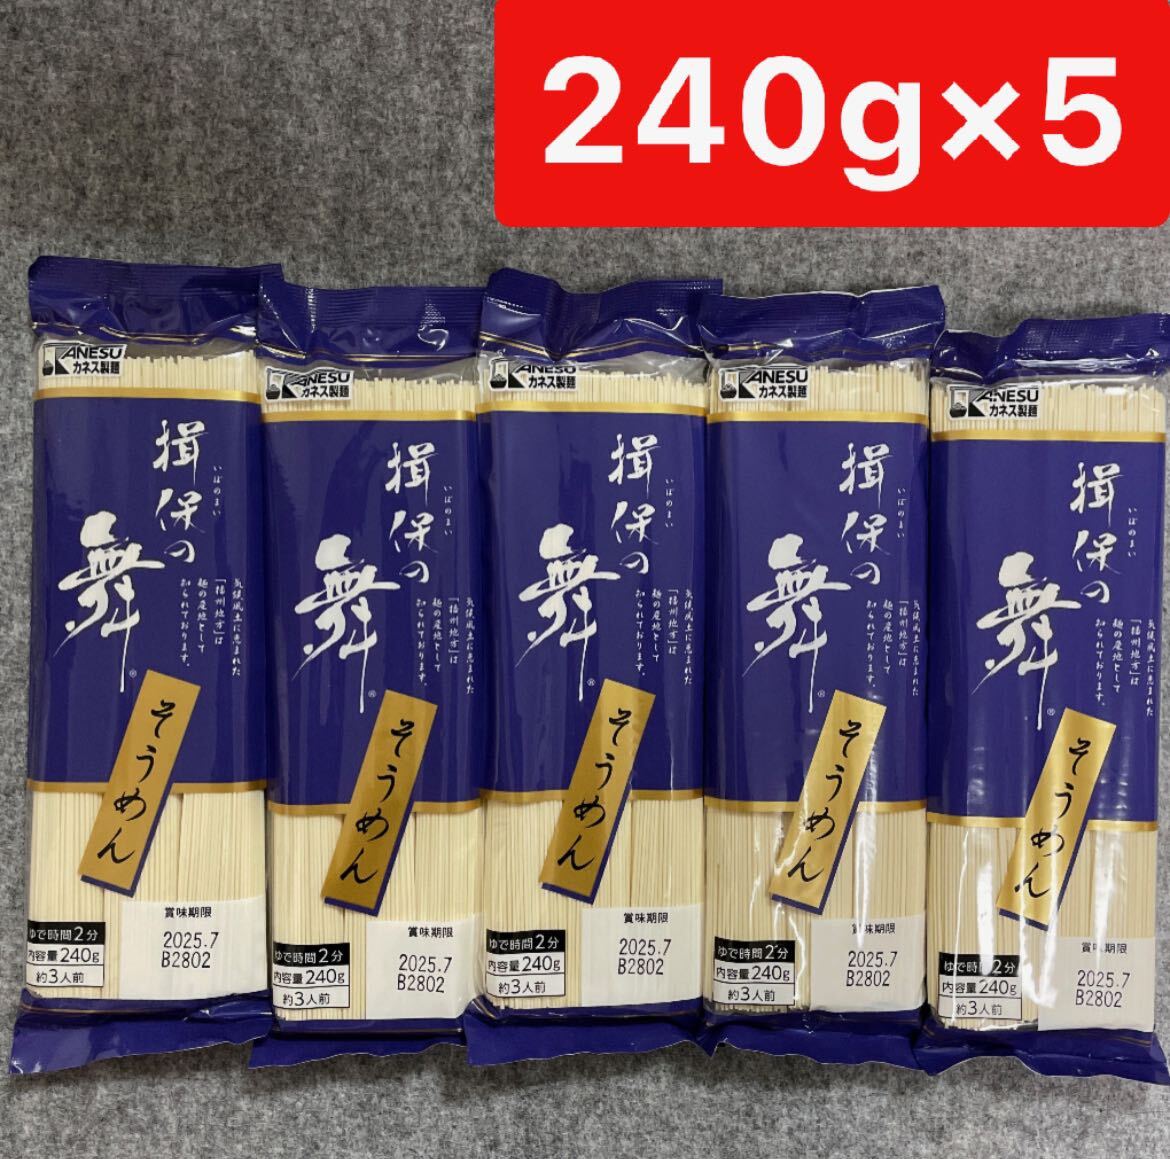 . гарантия. Mai вермишель 240g×5 пакет комплект Hyogo префектура производство элемент лапша kanes производства лапша 